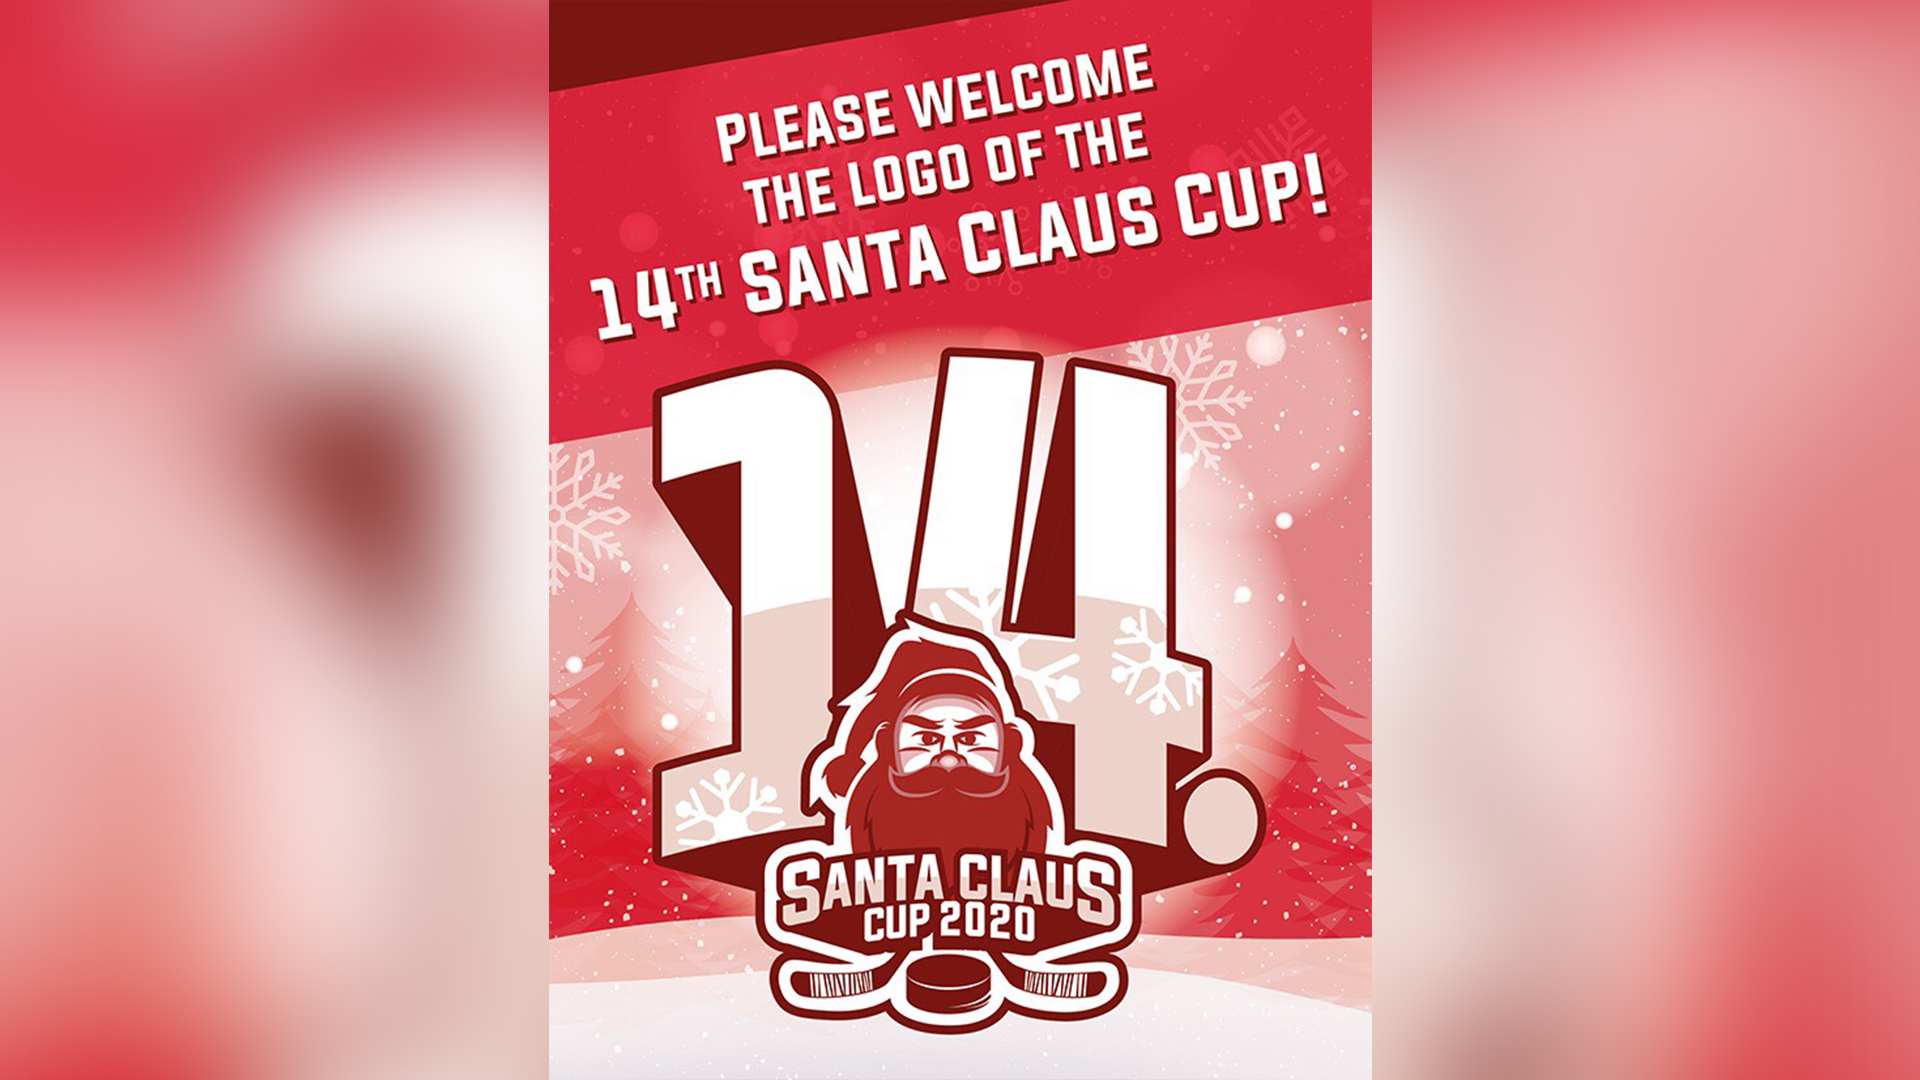 Predstavujeme Vám  nové logo 14. ročníka Santa Claus cupu!